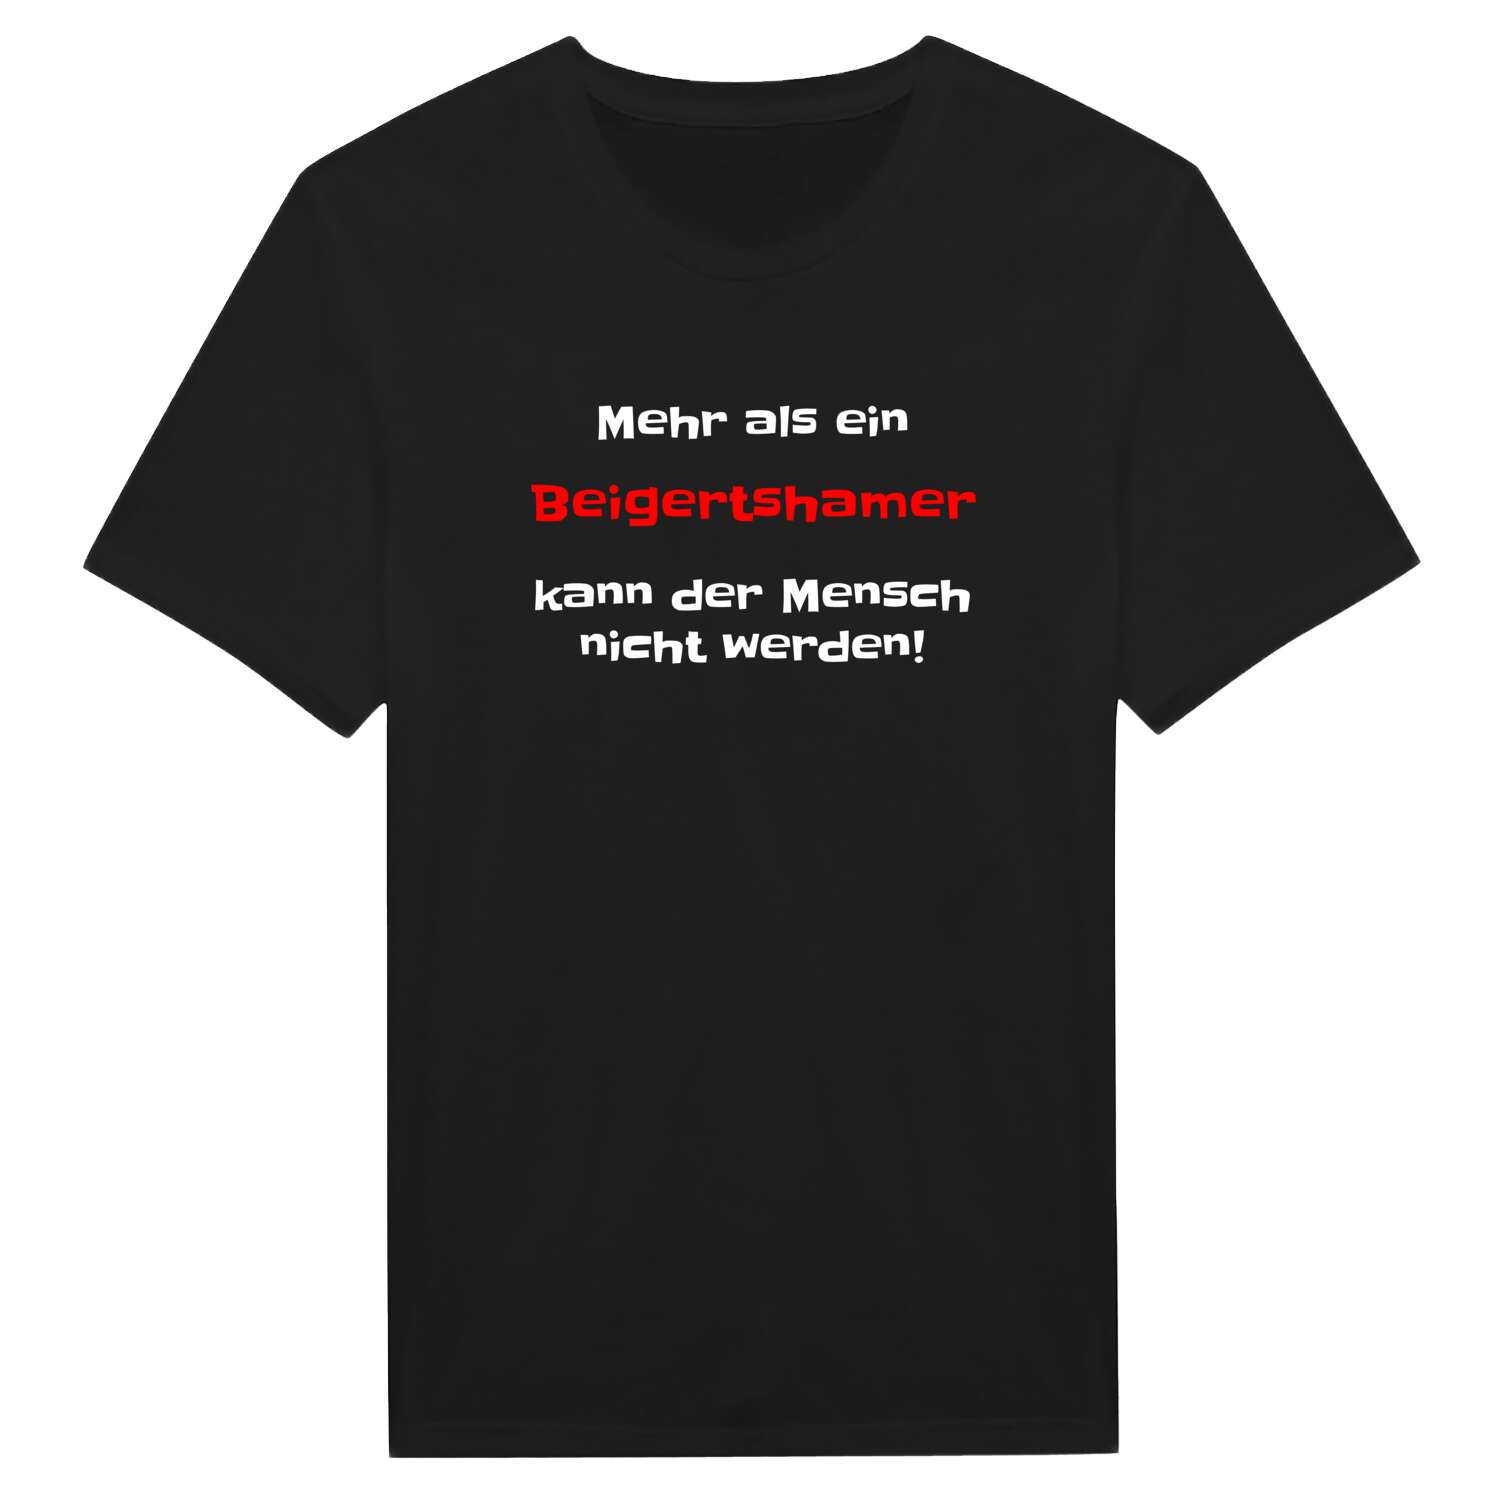 Beigertsham T-Shirt »Mehr als ein«